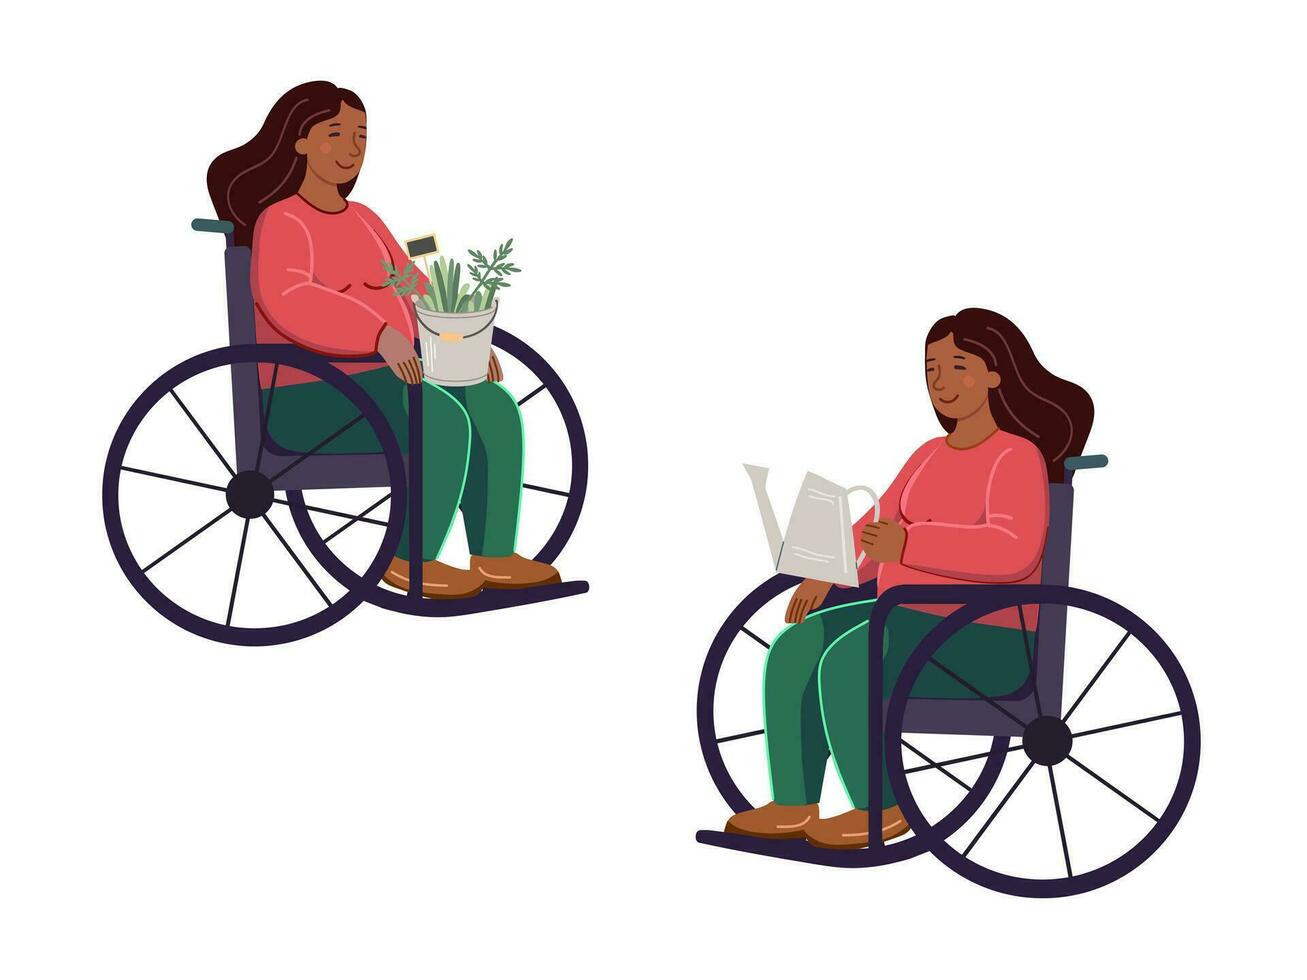 een Afrikaanse Amerikaans vrouw in een rolstoel met een gieter kan in haar handen en vrouw met een emmer van planten Aan haar ronde. tuinieren vlak vector illustratie. gelijkwaardigheid, tolerantie, inclusie.